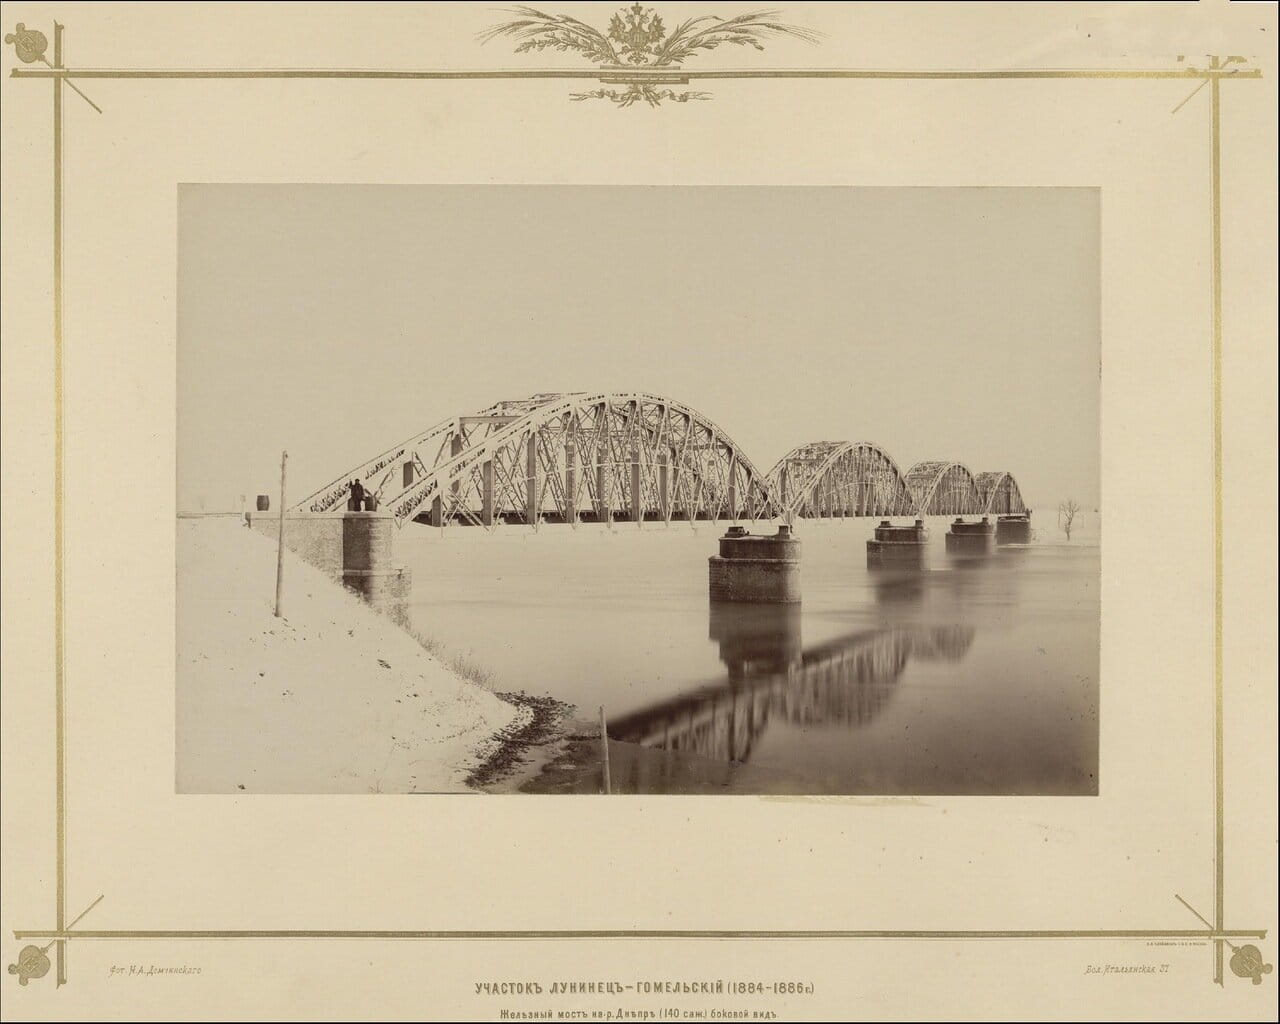 Участок Лунинец-Гомельский (1884 — 1886г.) Железный мост на р.Днепр. Боковой вид. 1880-е